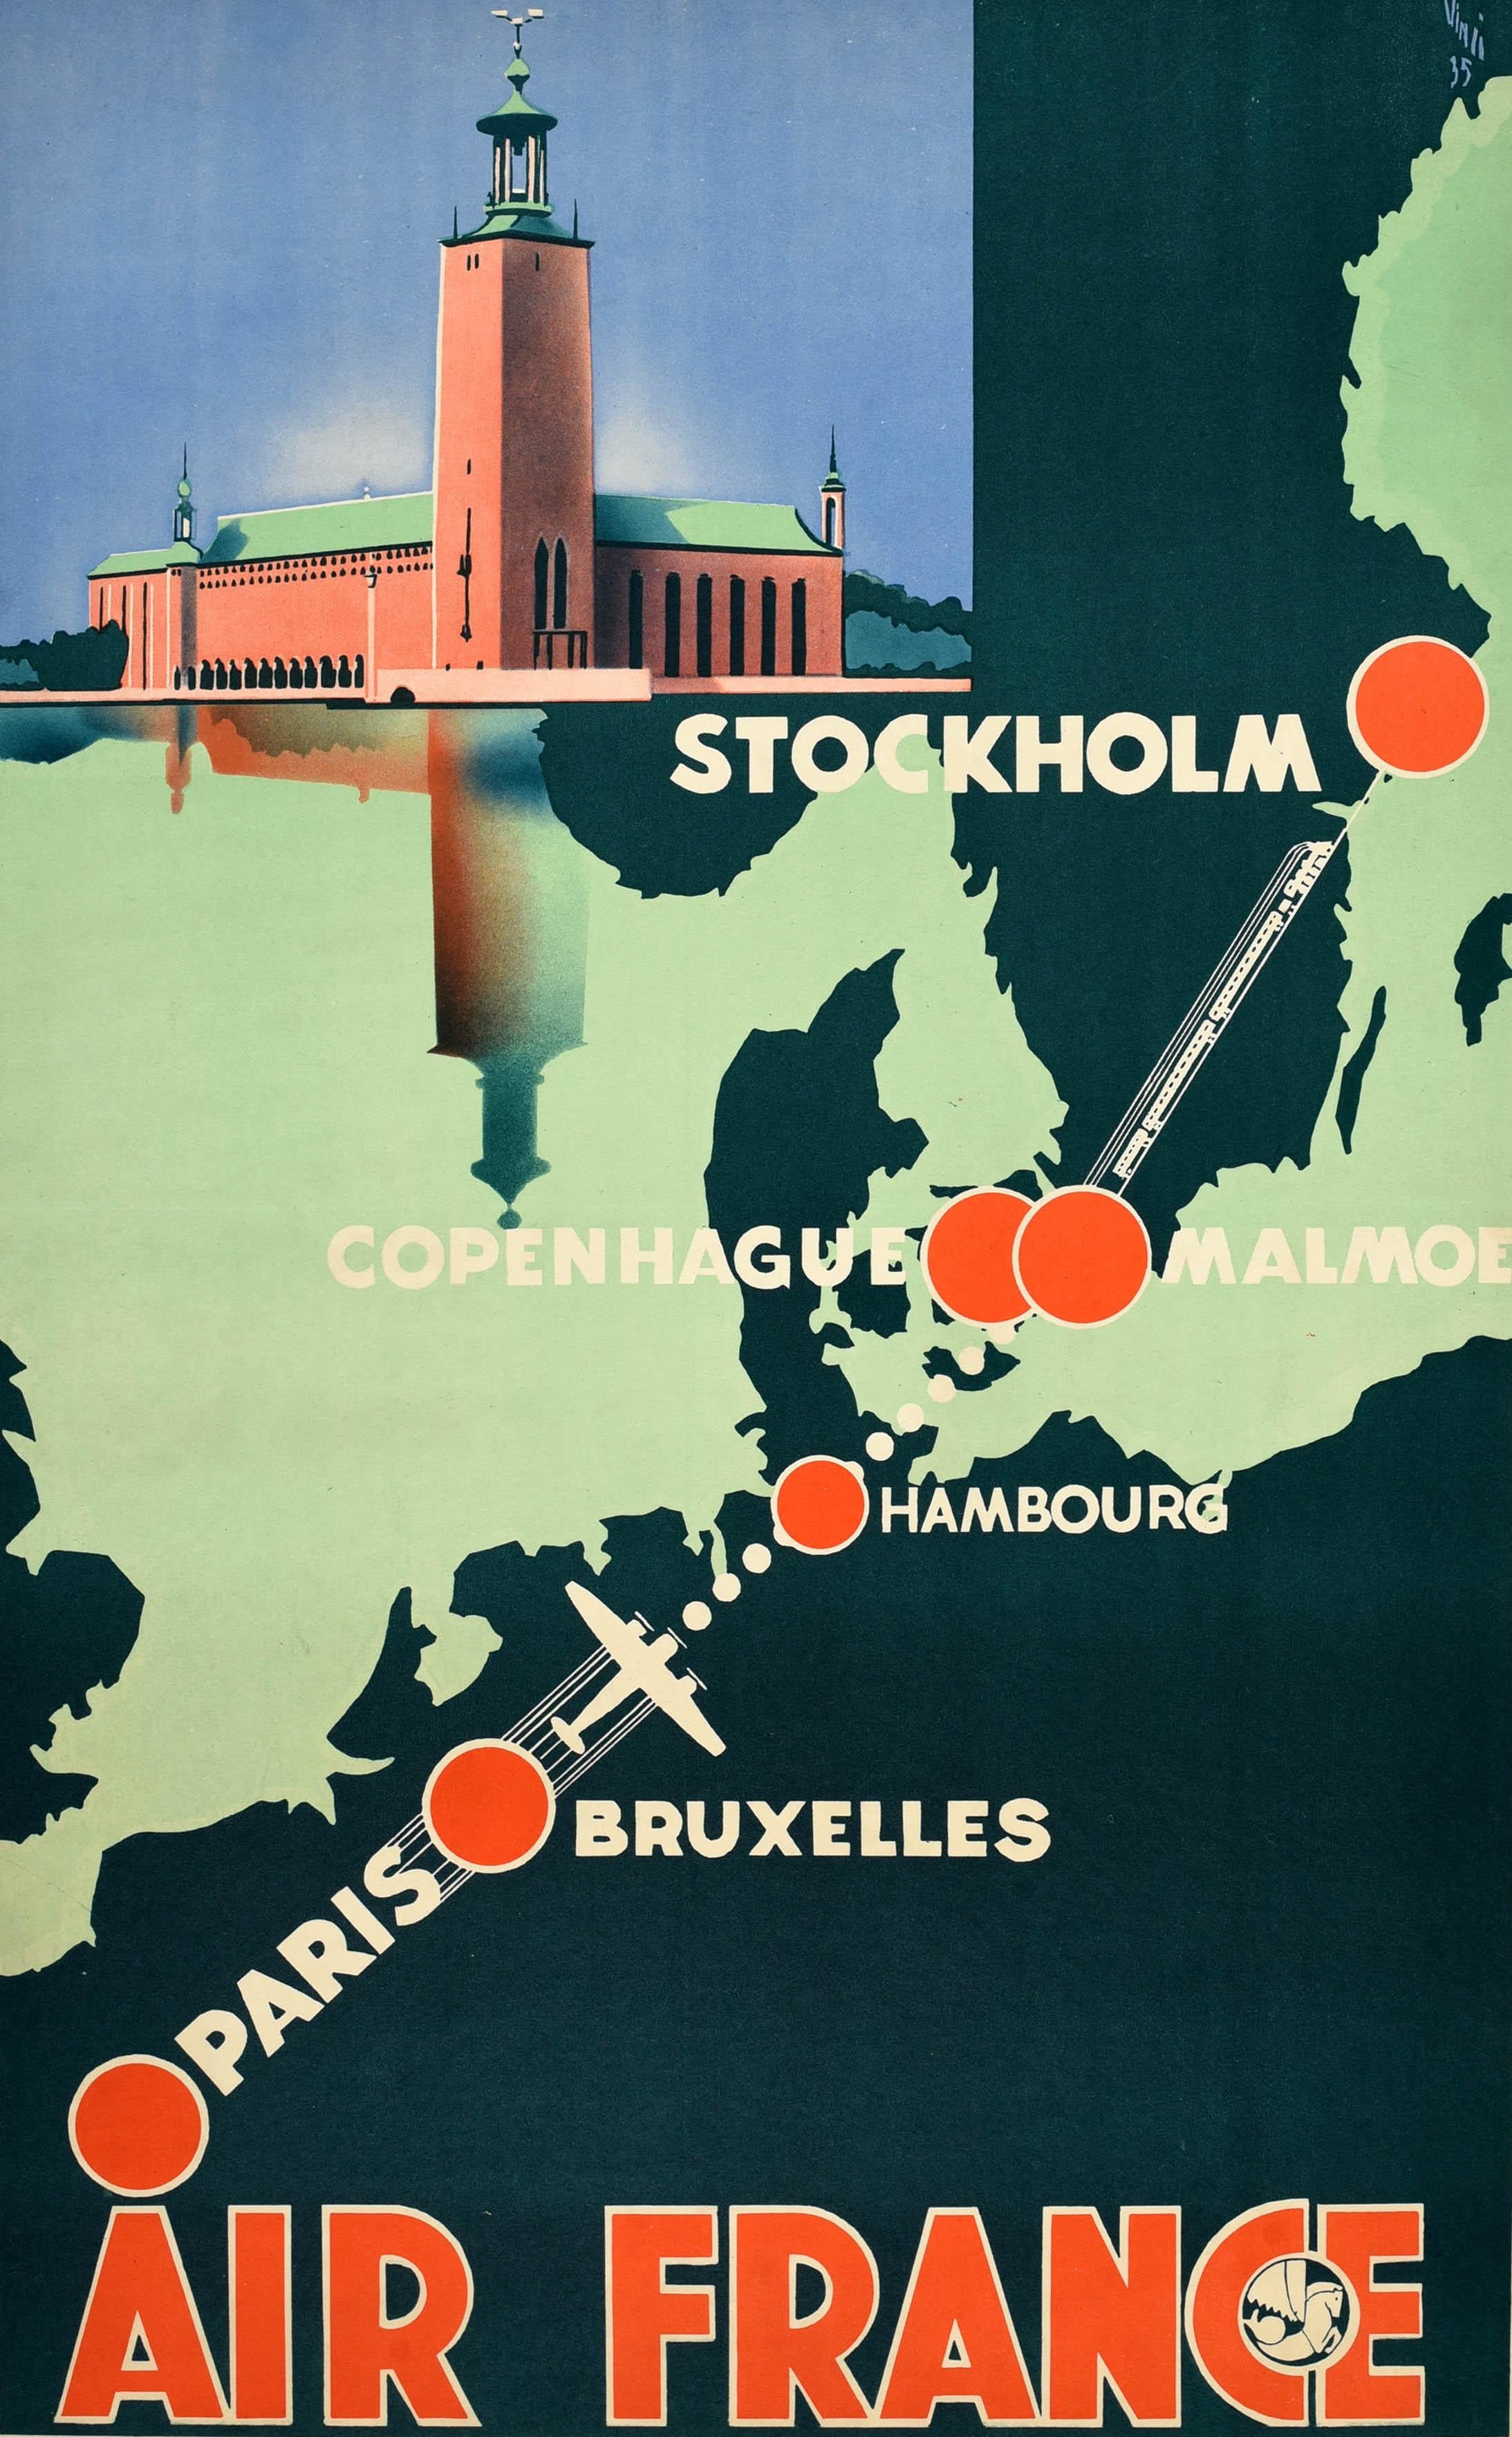 Affiche de voyage originale d'Air France pour la promotion de son itinéraire en Scandinavie de Paris à Stockholm par avion et par train via Bruxelles, Hambourg, Copenhague et Malmö. Le dessin Art Deco montre les villes sur une carte de la partie